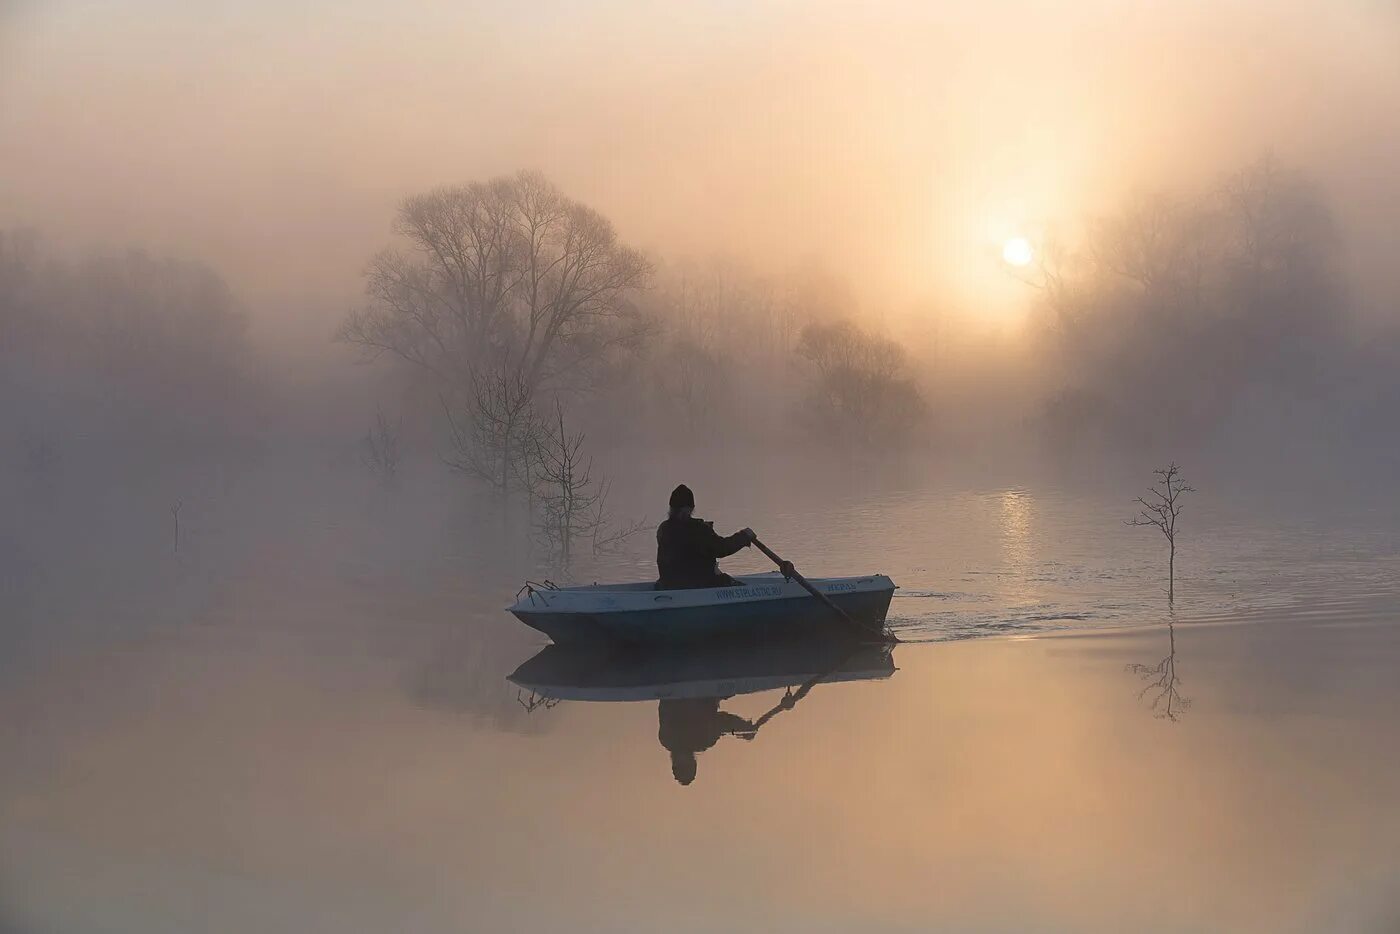 Вдали плывет. Лодка в тумане. Рыбак на лодке в тумане. Одинокая лодка. Человек в лодке на озере.